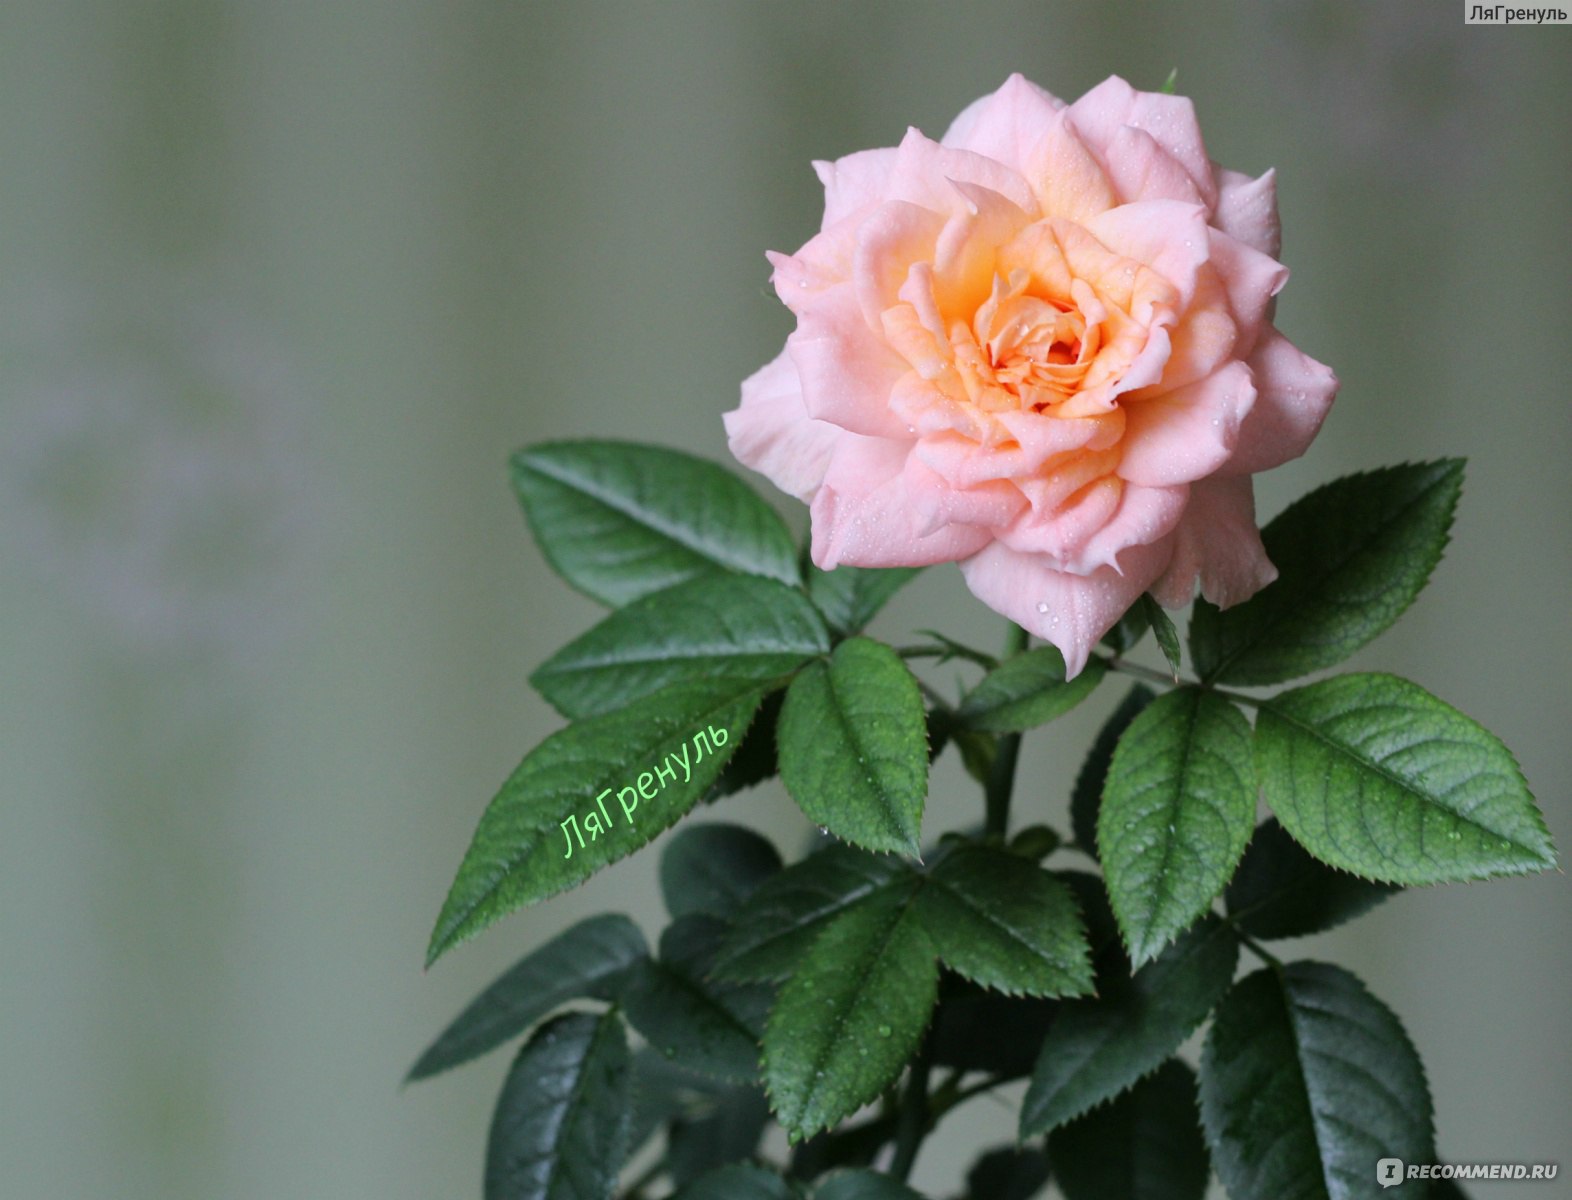 Роза Кордана - «Вам подарили розу в горшочке, и не знаете, что с нейделать?! Расскажу свои секреты по выращиванию роз»